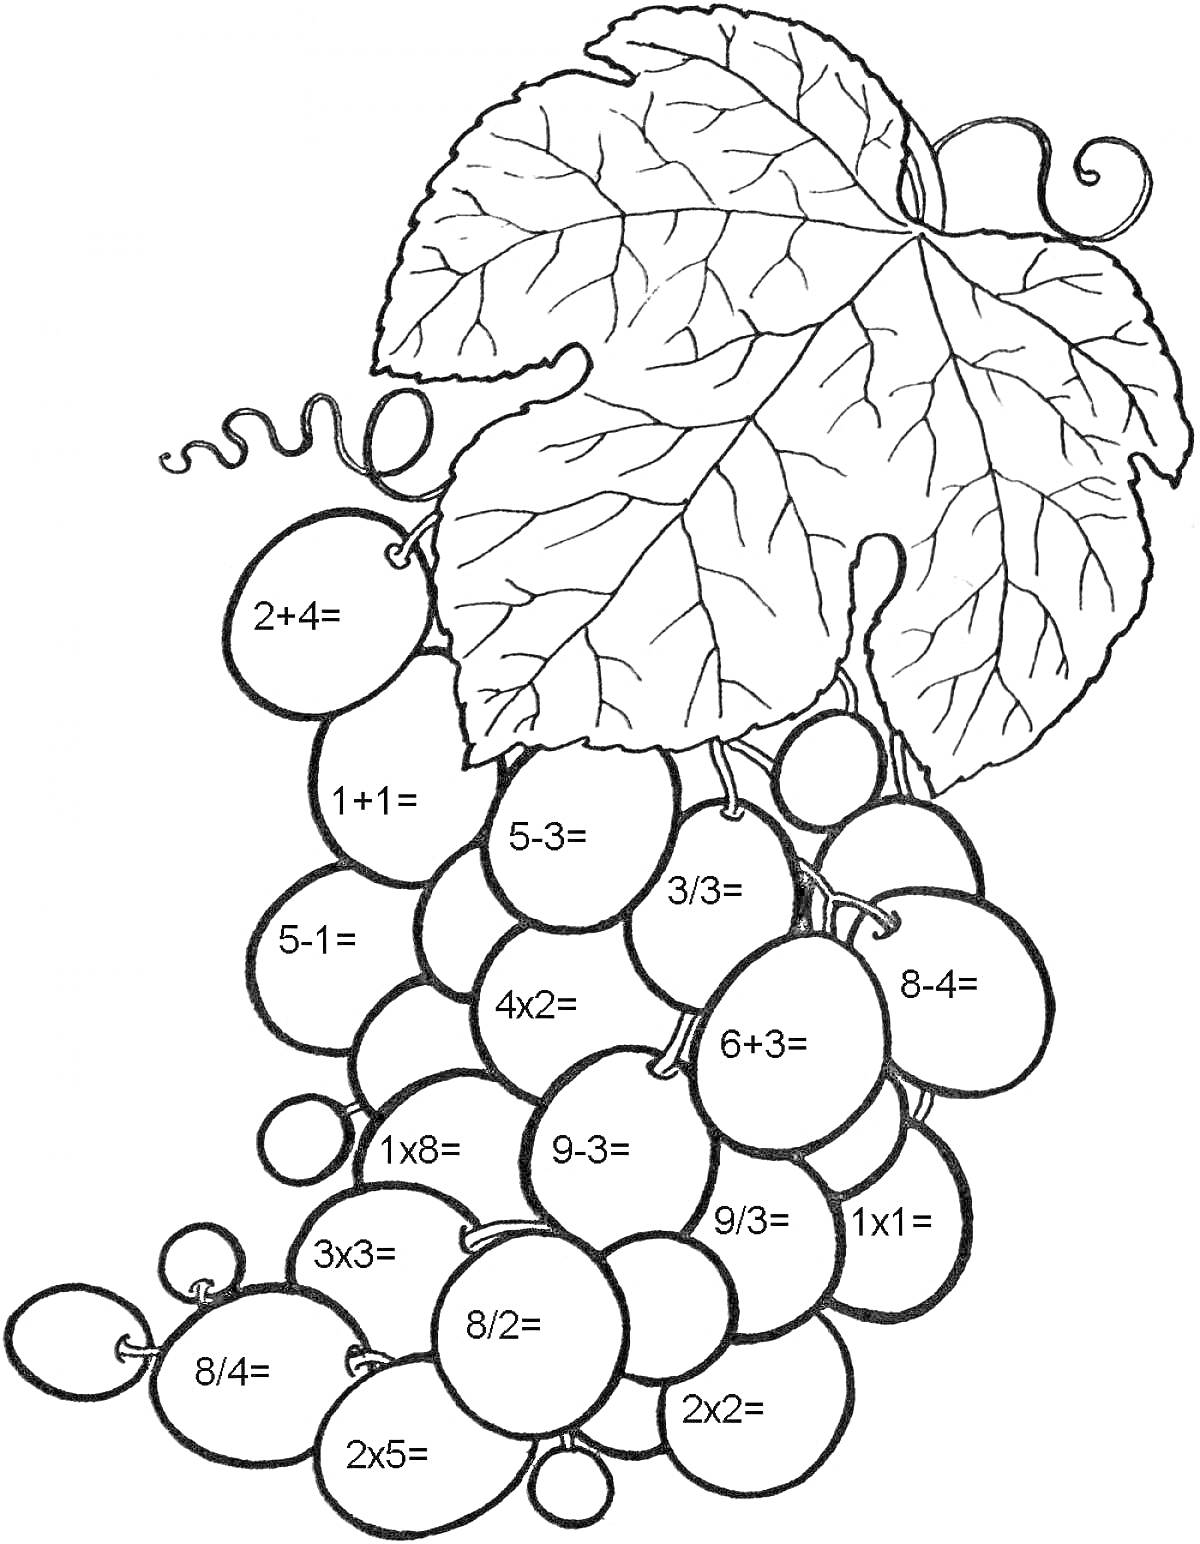  Виноградная гроздь с примерами на сложение, вычитание и умножение